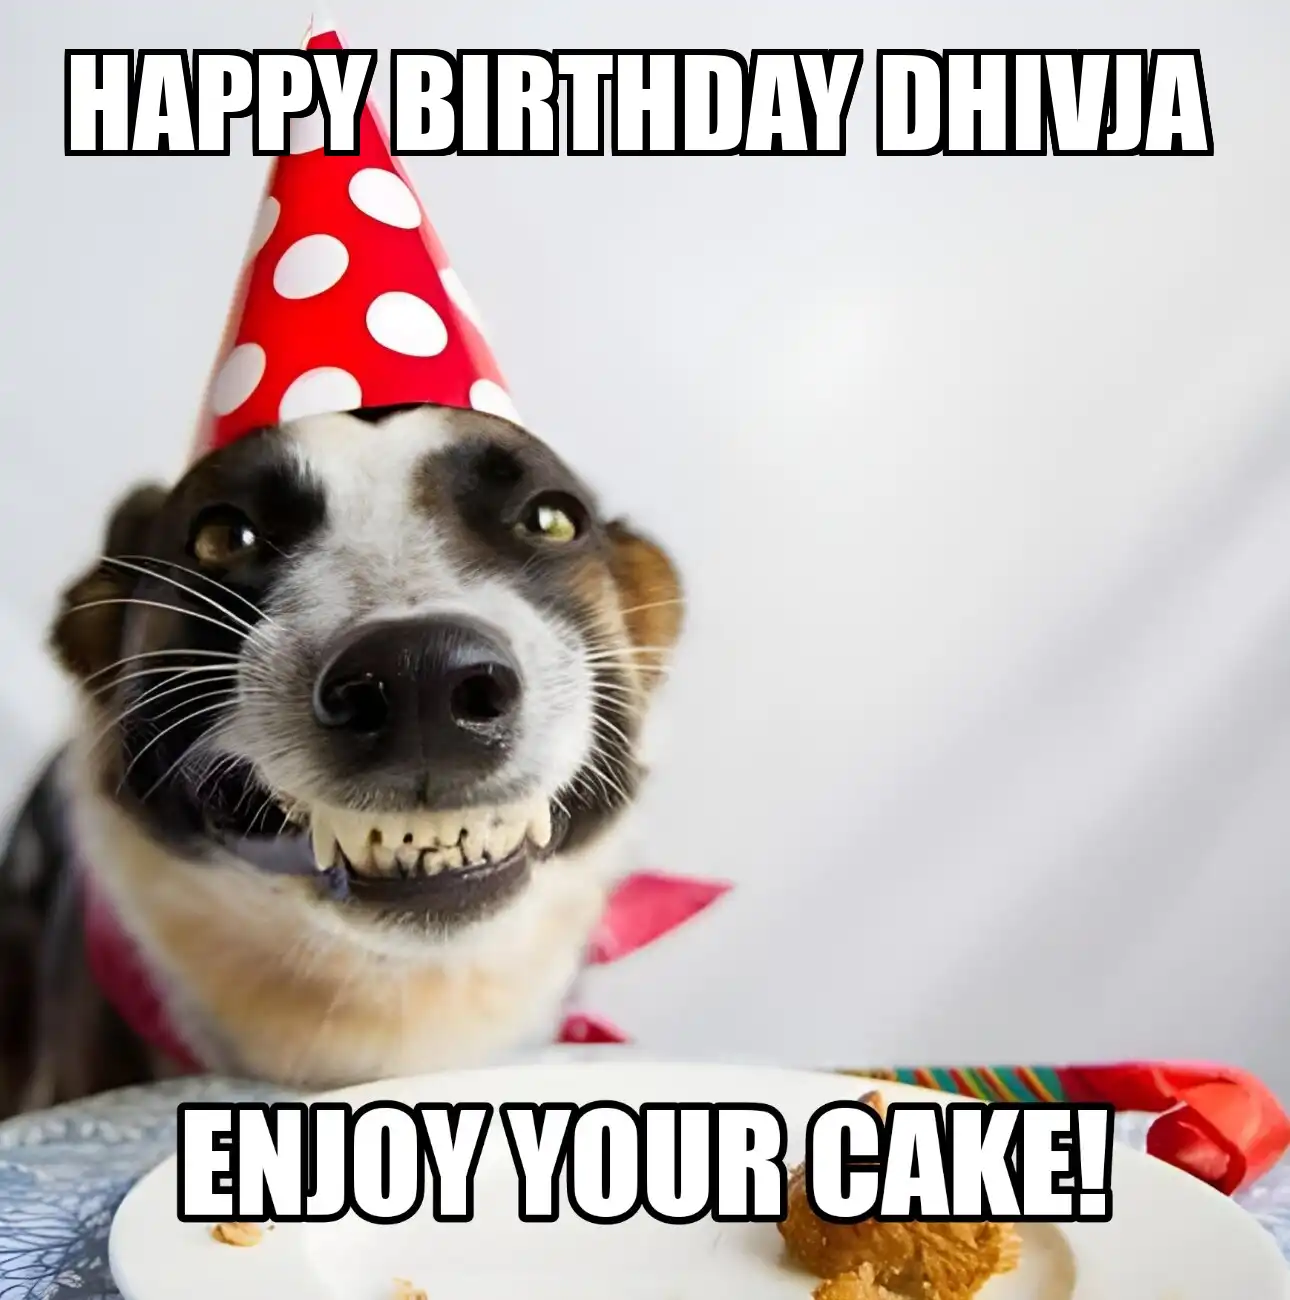 Happy Birthday Dhivja Enjoy Your Cake Dog Meme